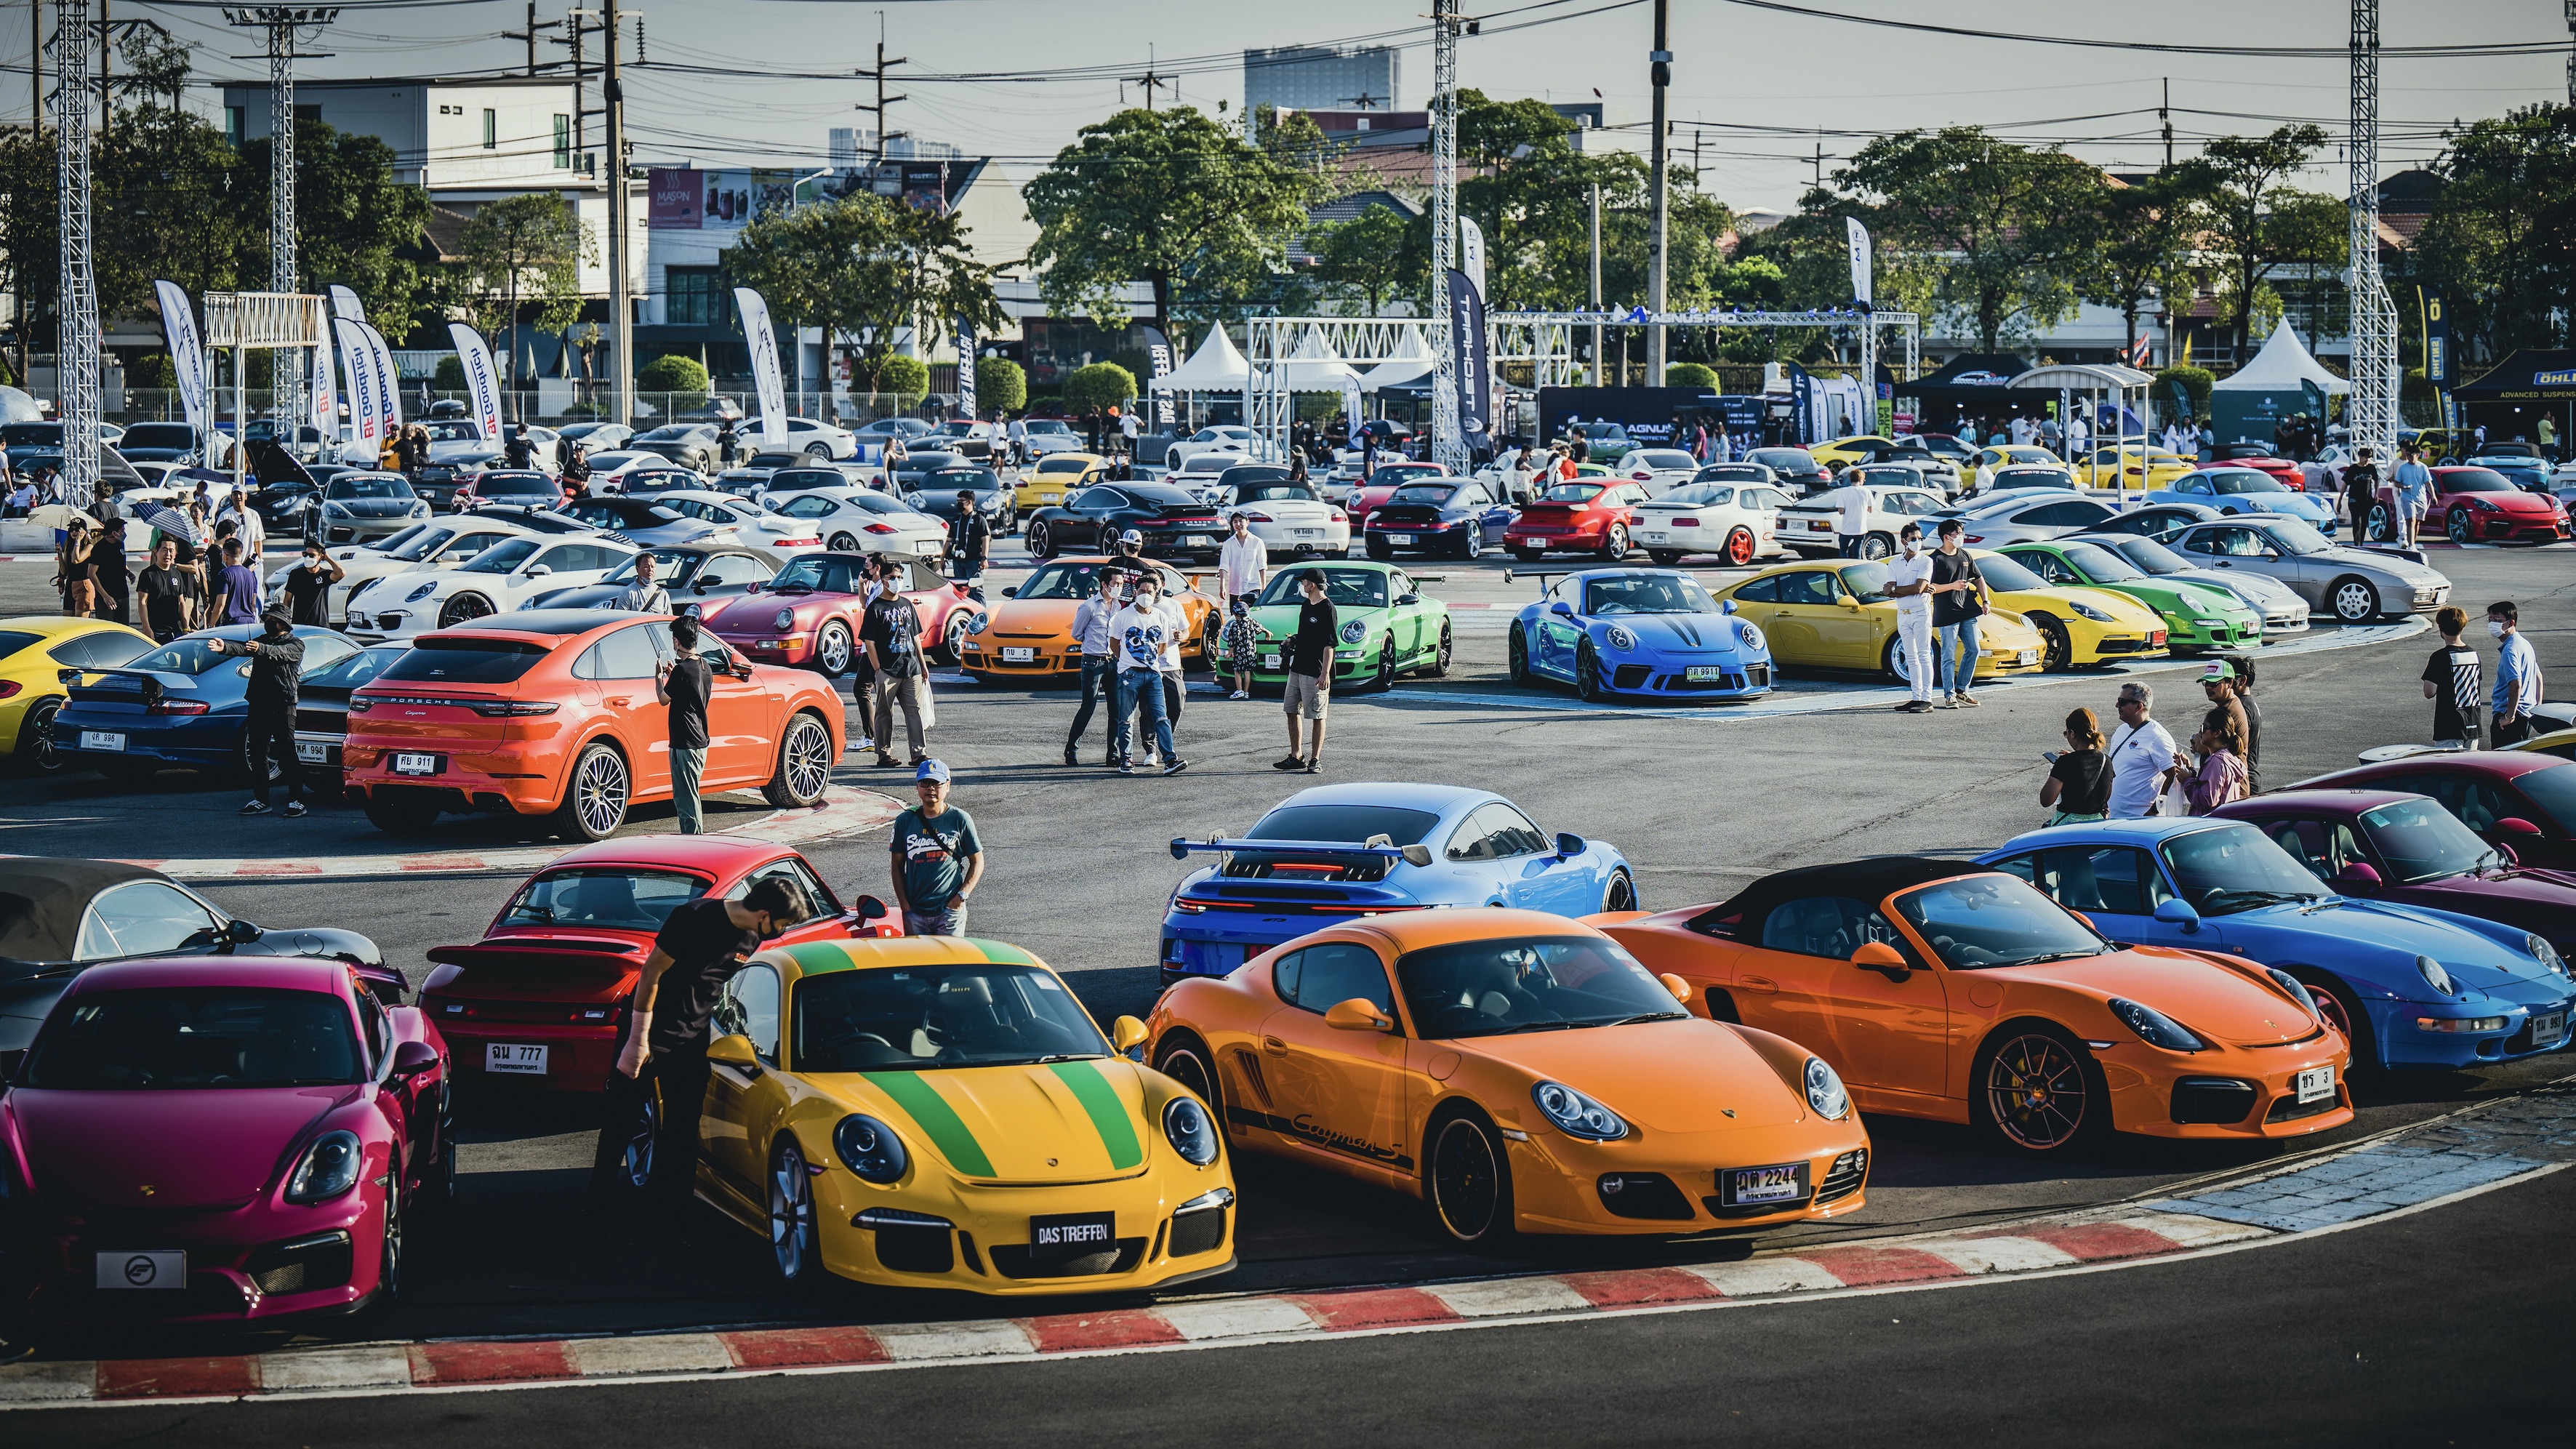 Many colourful Porsche cars at Das Treffen event in Thailand